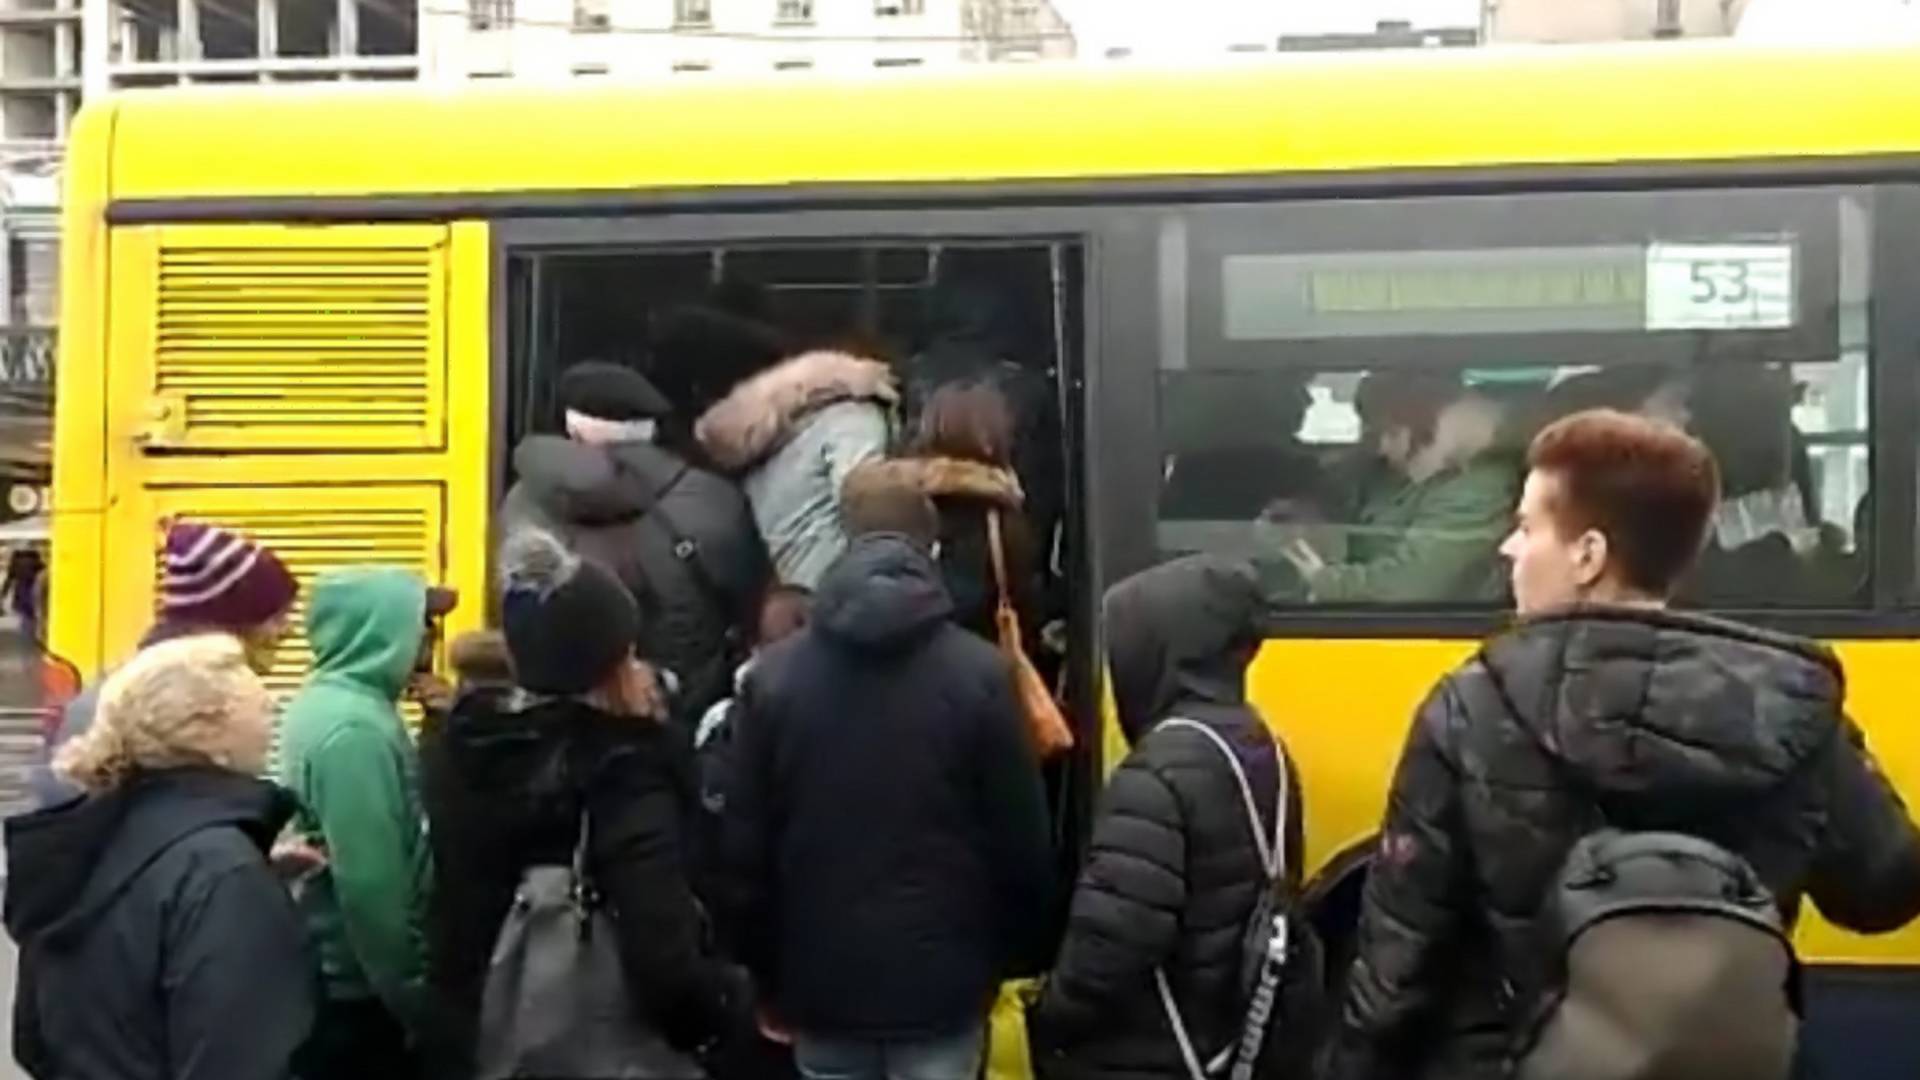 Strašne scene iz gradskog prevoza: građane krive za širenje korone, a ne rade ništa da povećaju broj autobusa